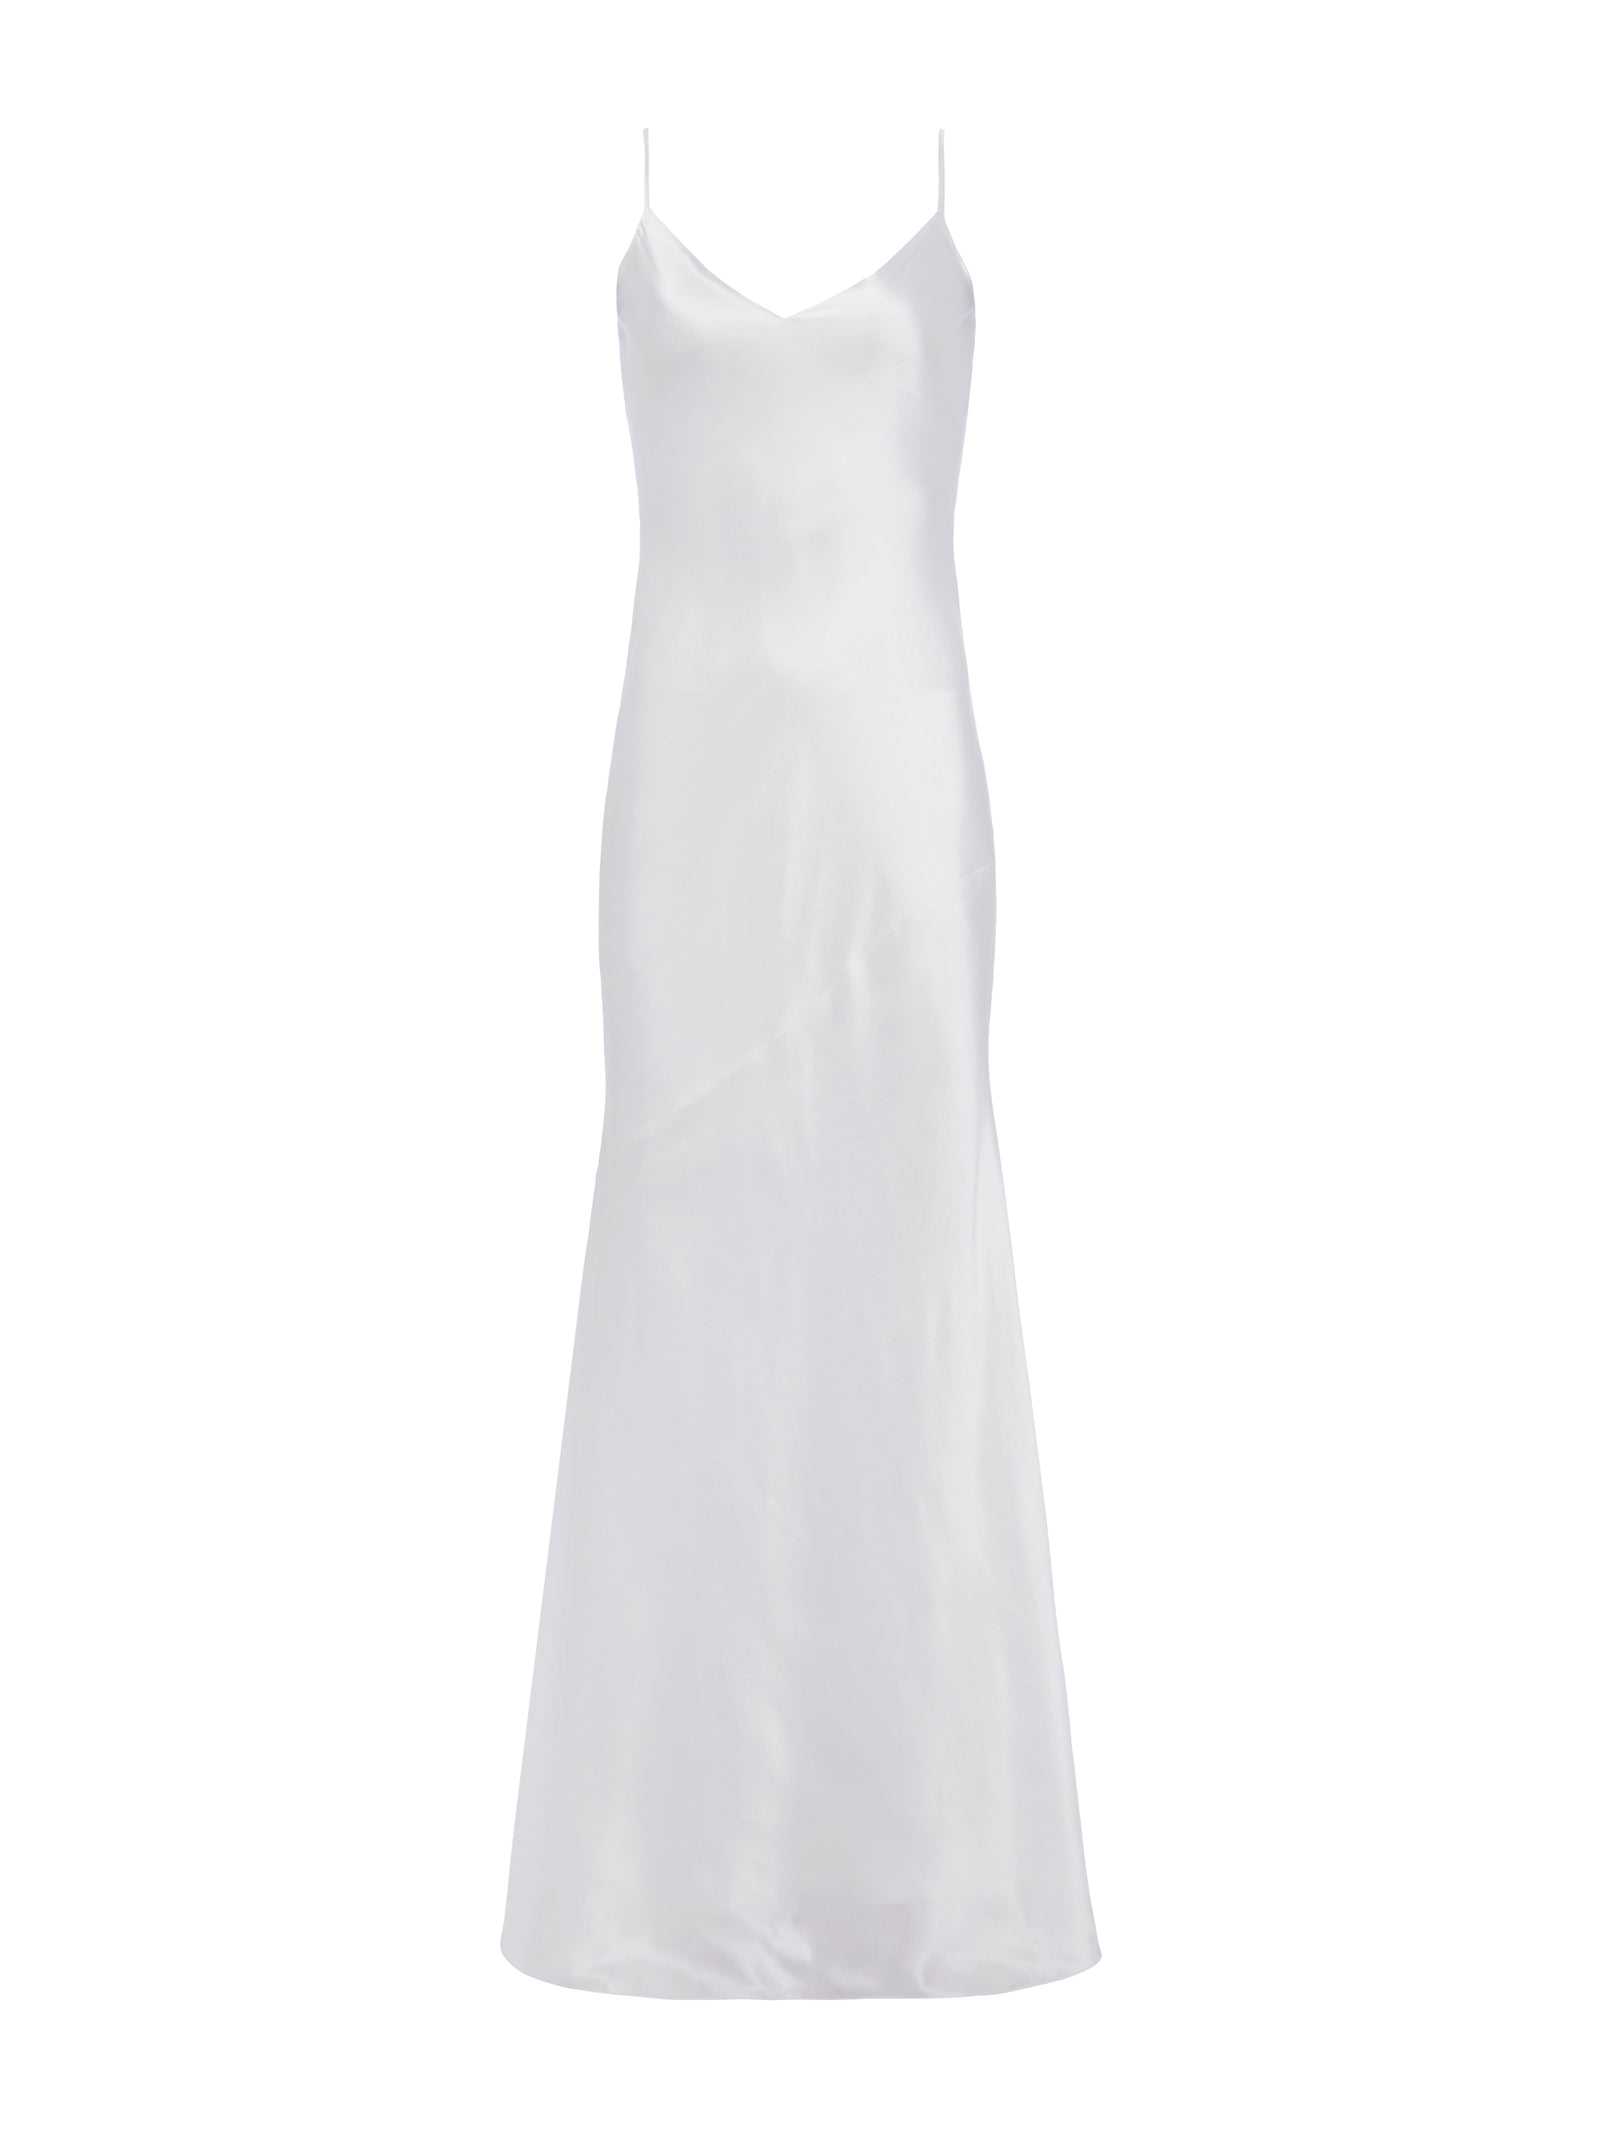 L'AGENCE Serita Silk Slip Dress in White